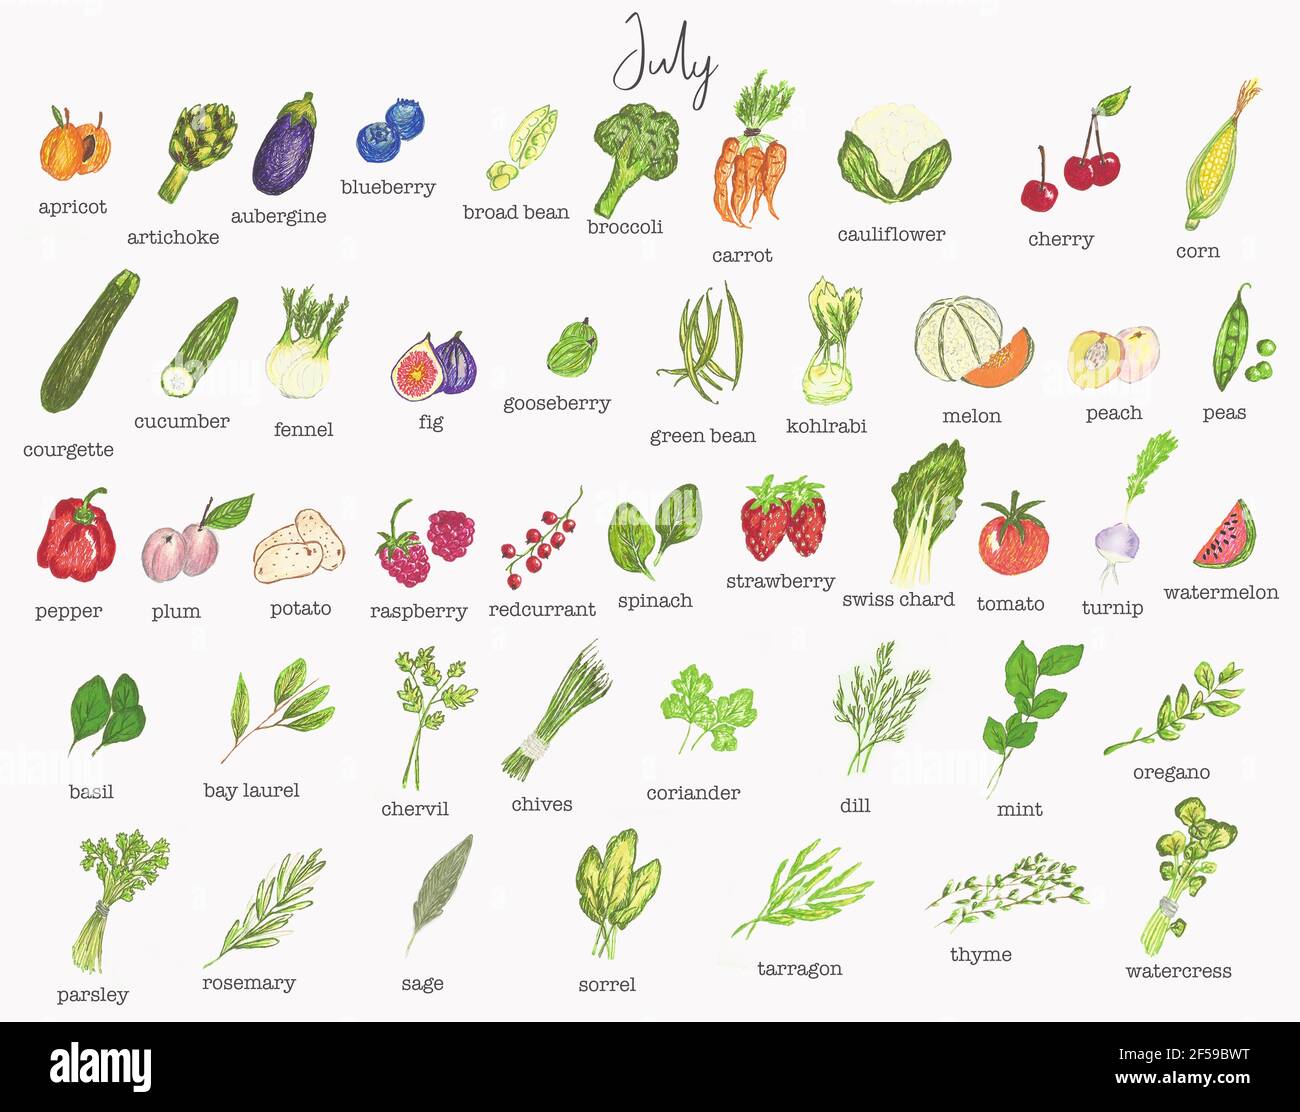 Juli Obst und Gemüse Saisonkalender Stockfotografie - Alamy